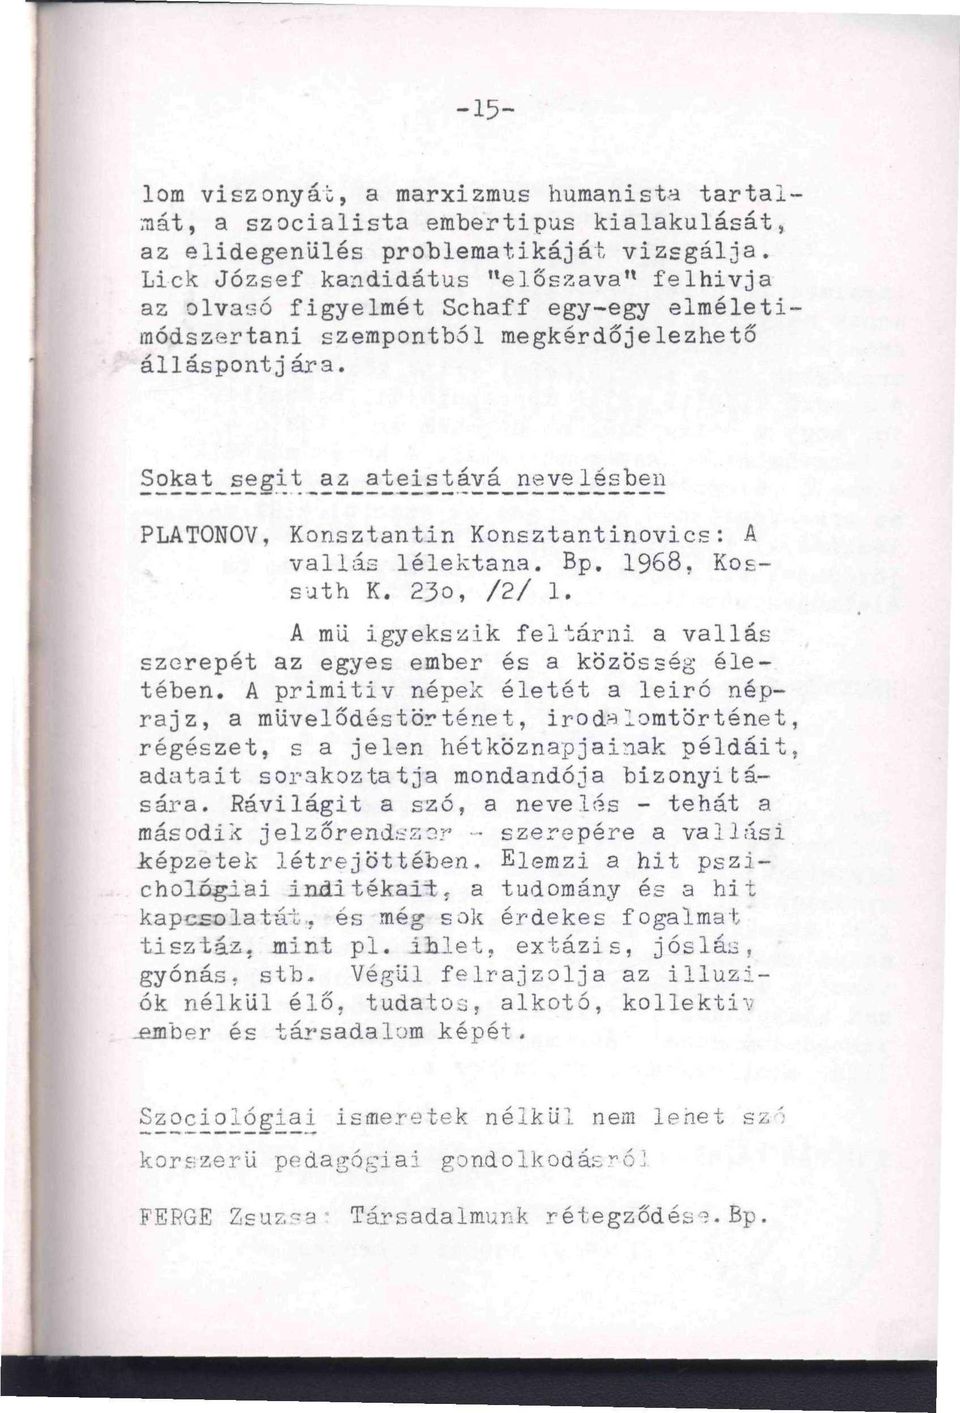 Sokat segit az ateistává nevelésben PLATONOV, Konsztantin Konsztantinovics: A vallás lélektana. Bp. 1968, Ko - ' ', suth K. 23o, /2/ 1.